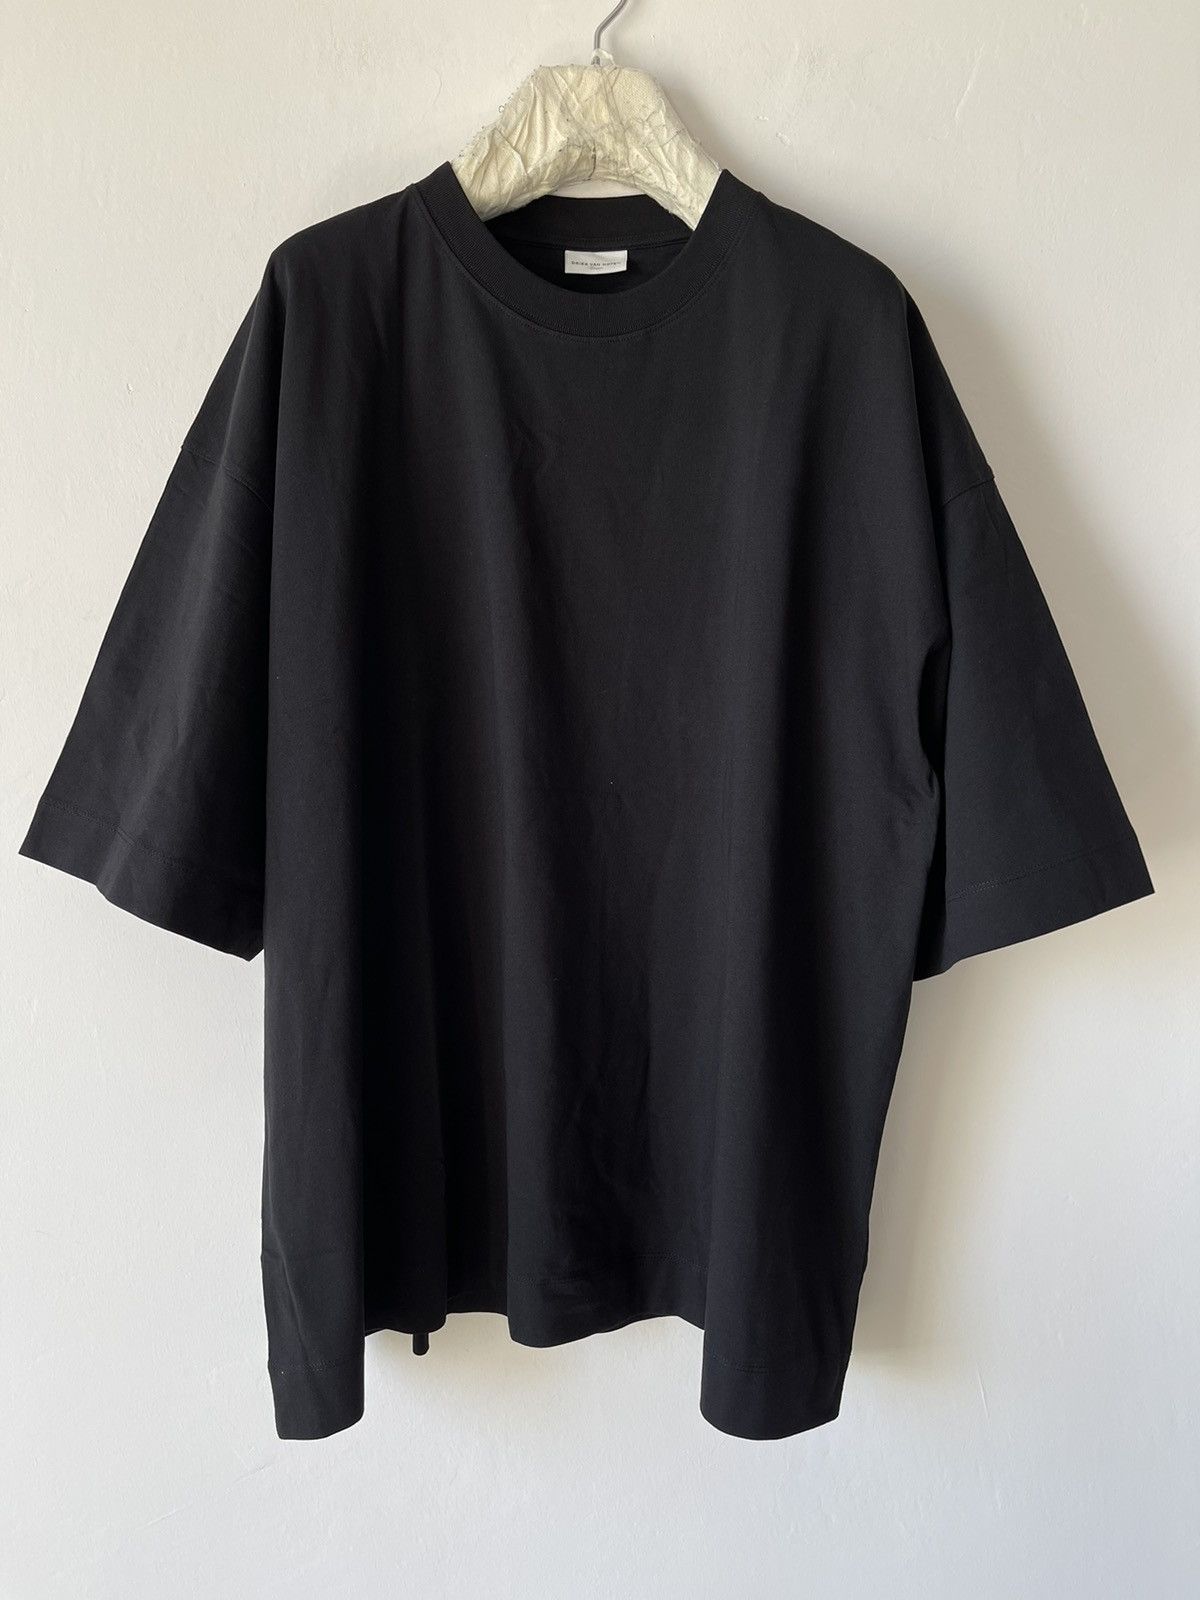 Dries Van Noten Dries Van Noten black cotton oversized t-shirt | Grailed